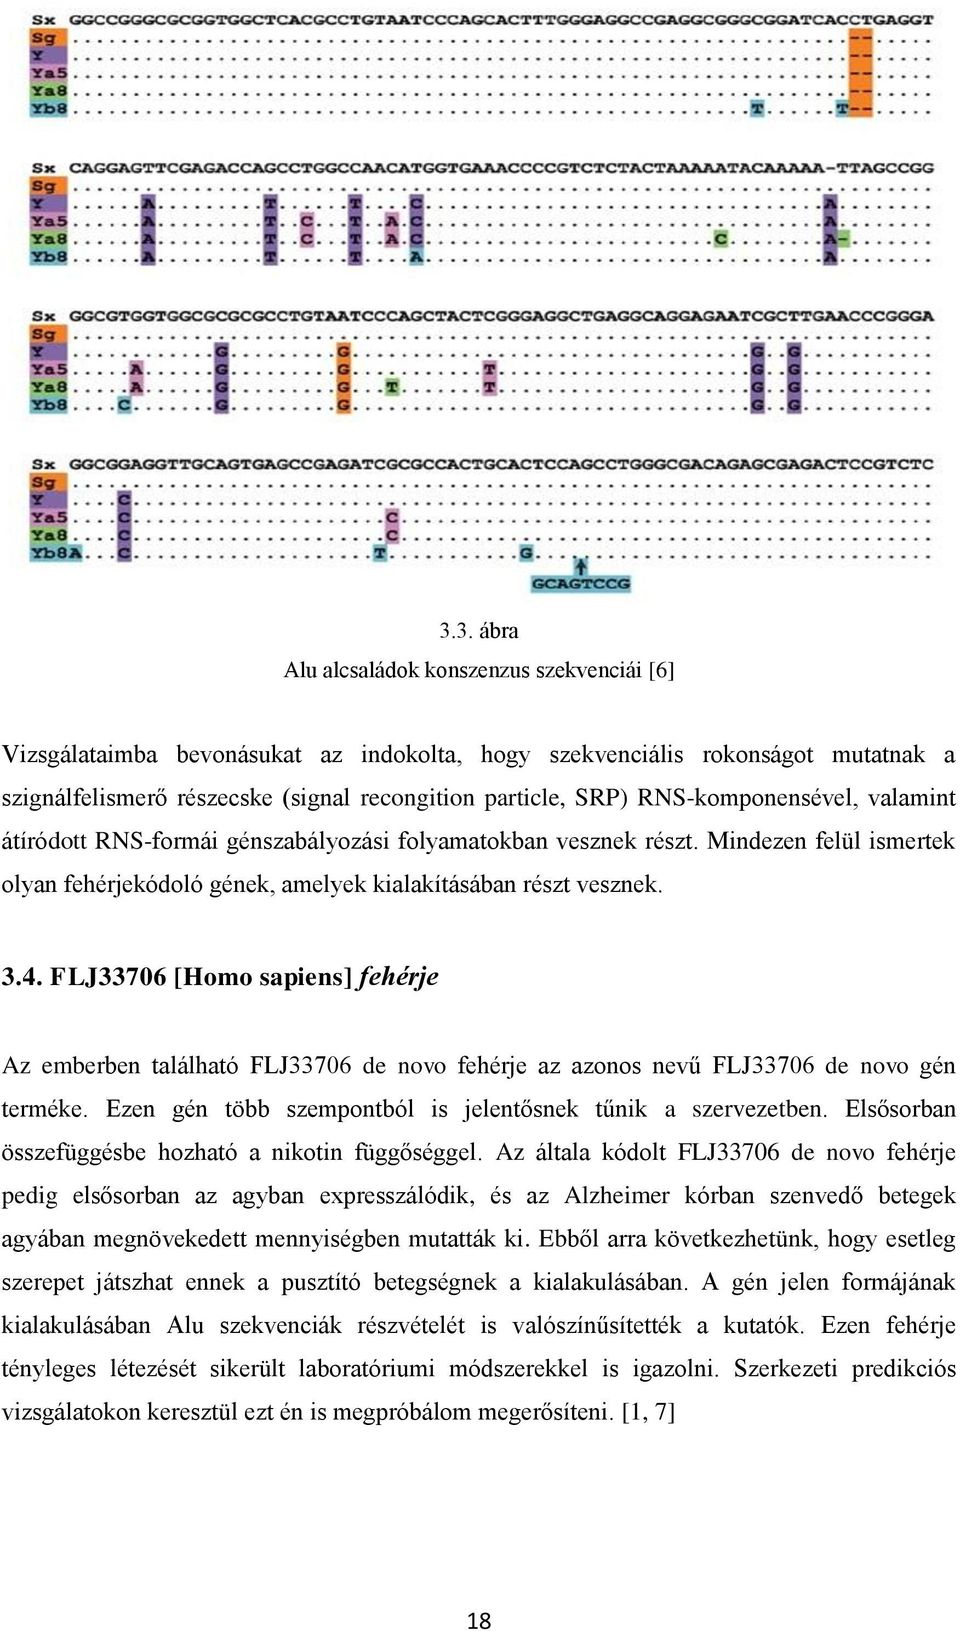 FLJ33706 [Homo sapiens] fehérje Az emberben található FLJ33706 de novo fehérje az azonos nevű FLJ33706 de novo gén terméke. Ezen gén több szempontból is jelentősnek tűnik a szervezetben.